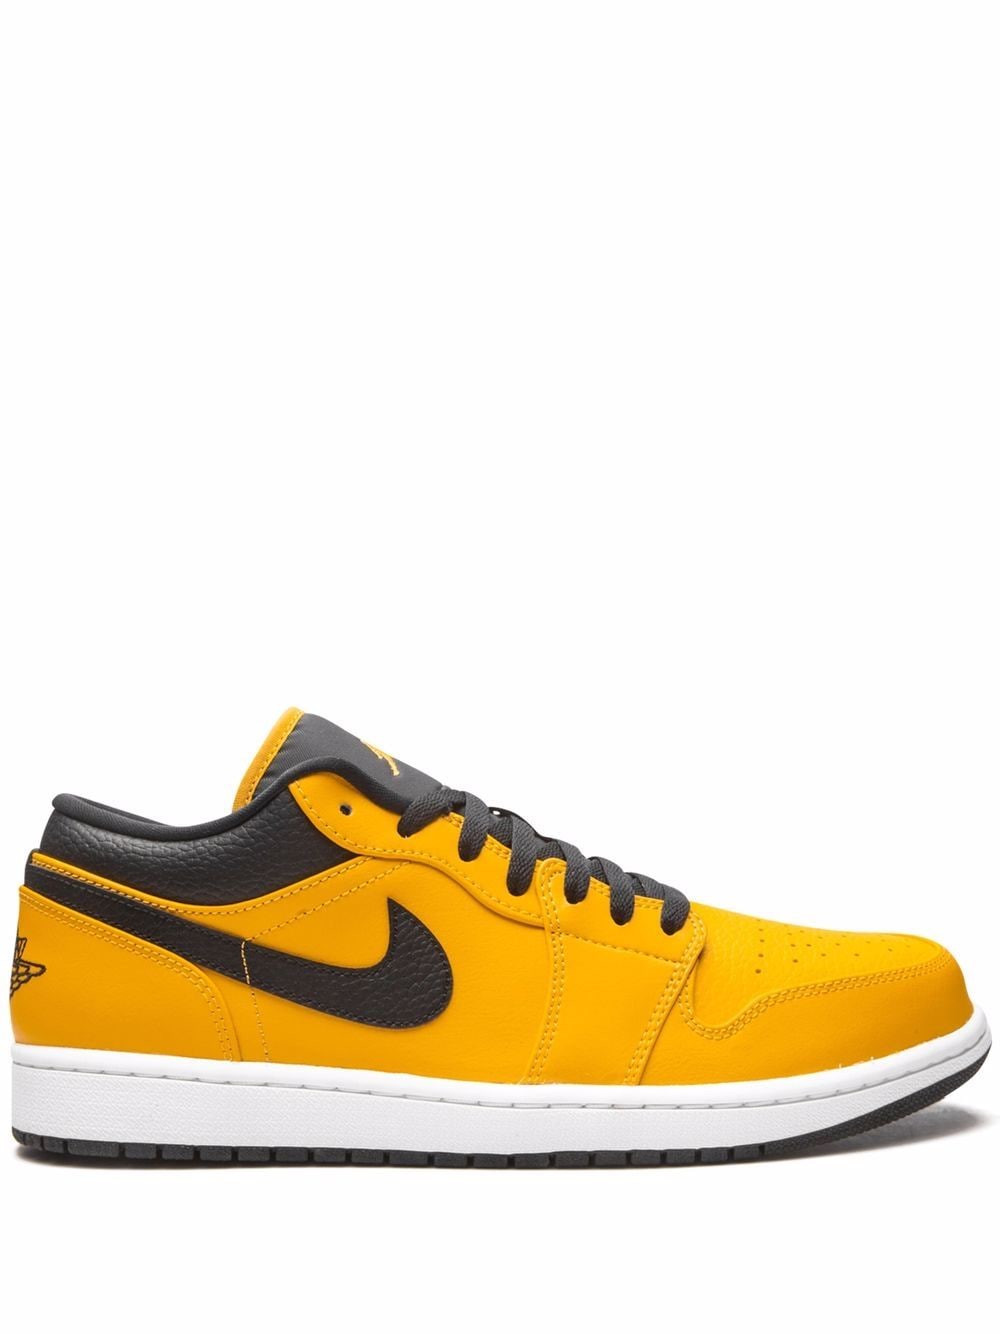 Jordan Air Jordan 1 Low "University Gold/Black" sneakers - Yellow